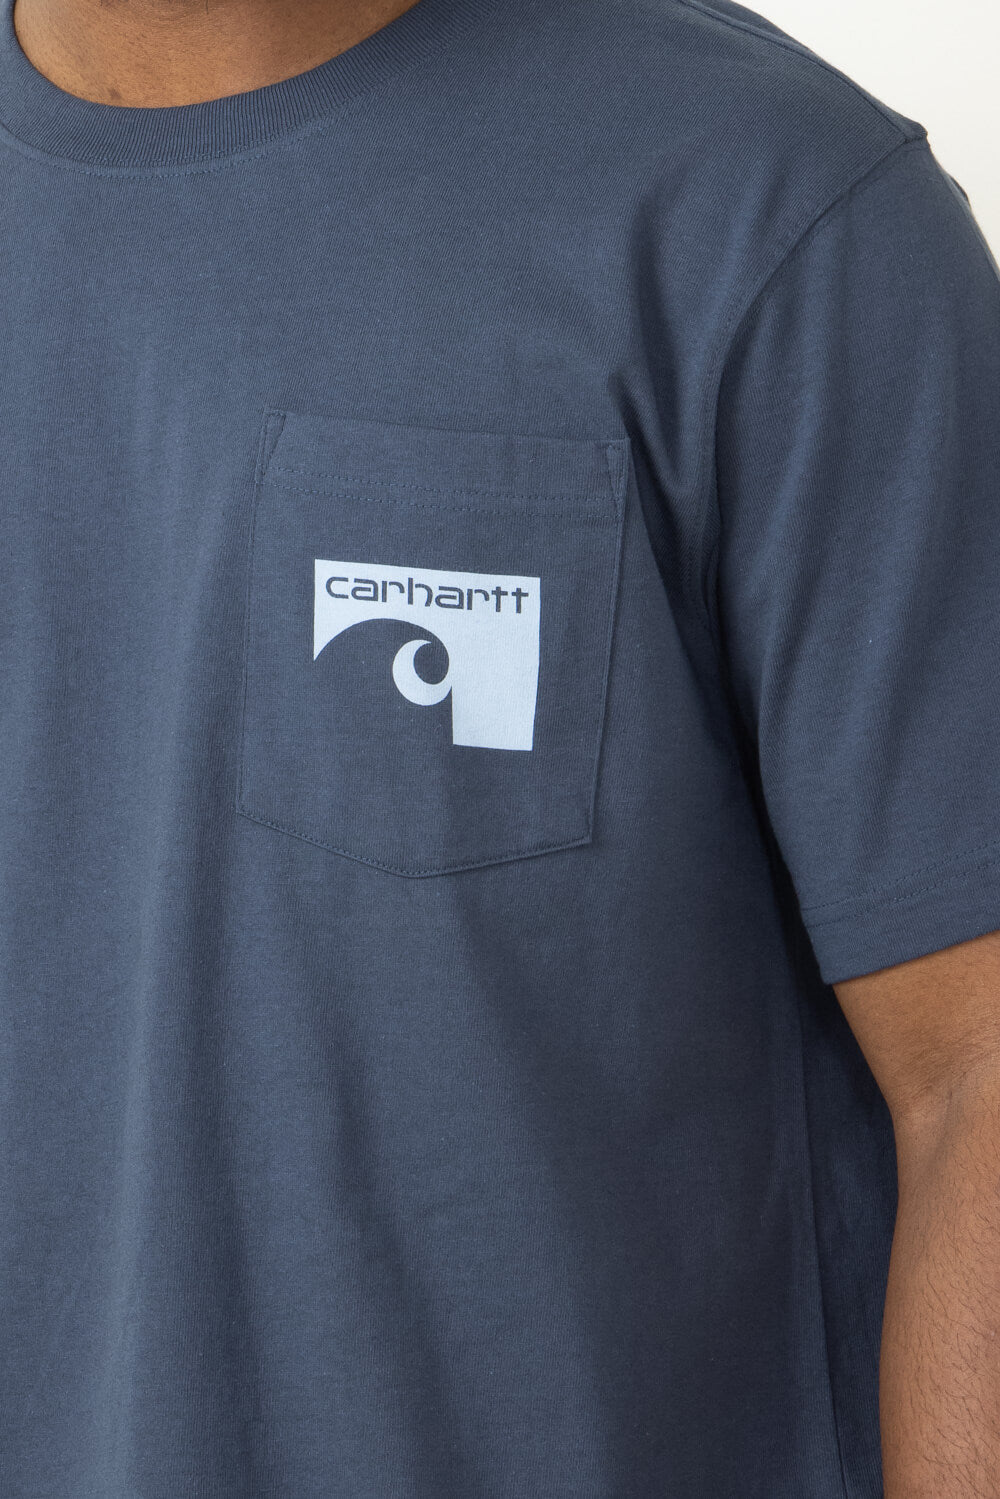 Carhartt Force Sun Defender Lightweight Logo Graphic T-Shirt for